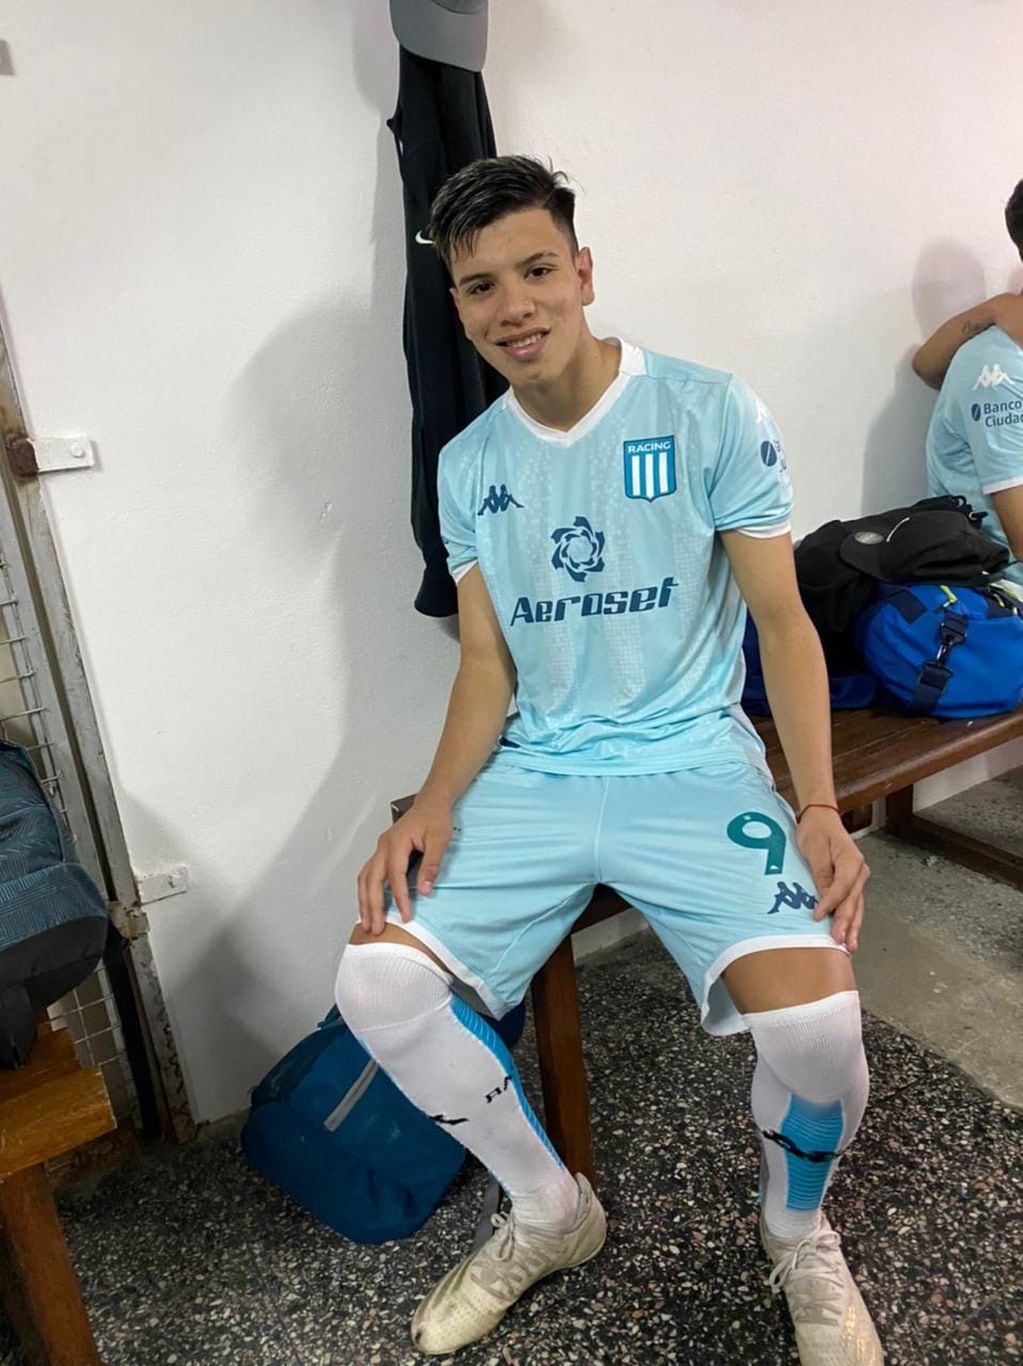 El futbolista de las inferiores de Racing, Lautaro Ronchi (18), fue internado por un balazo en la cabeza tras un ataque en Ayacucho al 3900, en la zona sur de Rosario.